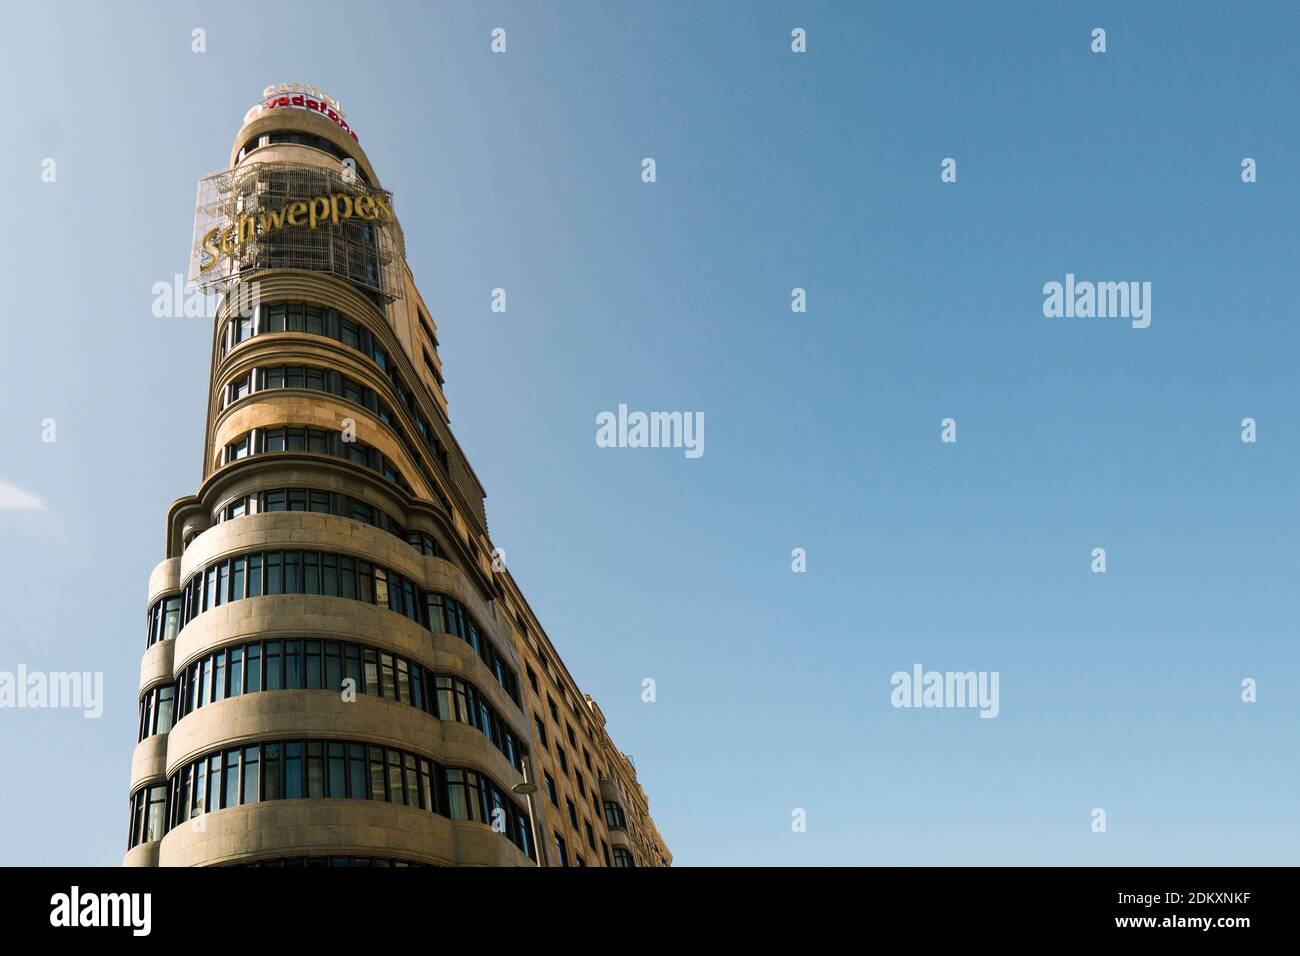 Madrid Spanien: Aas Gebäude (Capitol) - eines der bekanntesten Gebäude an Madrids Gran Via. Hauptstraße mit Wolkenkratzern am Callao Square. Stockfoto